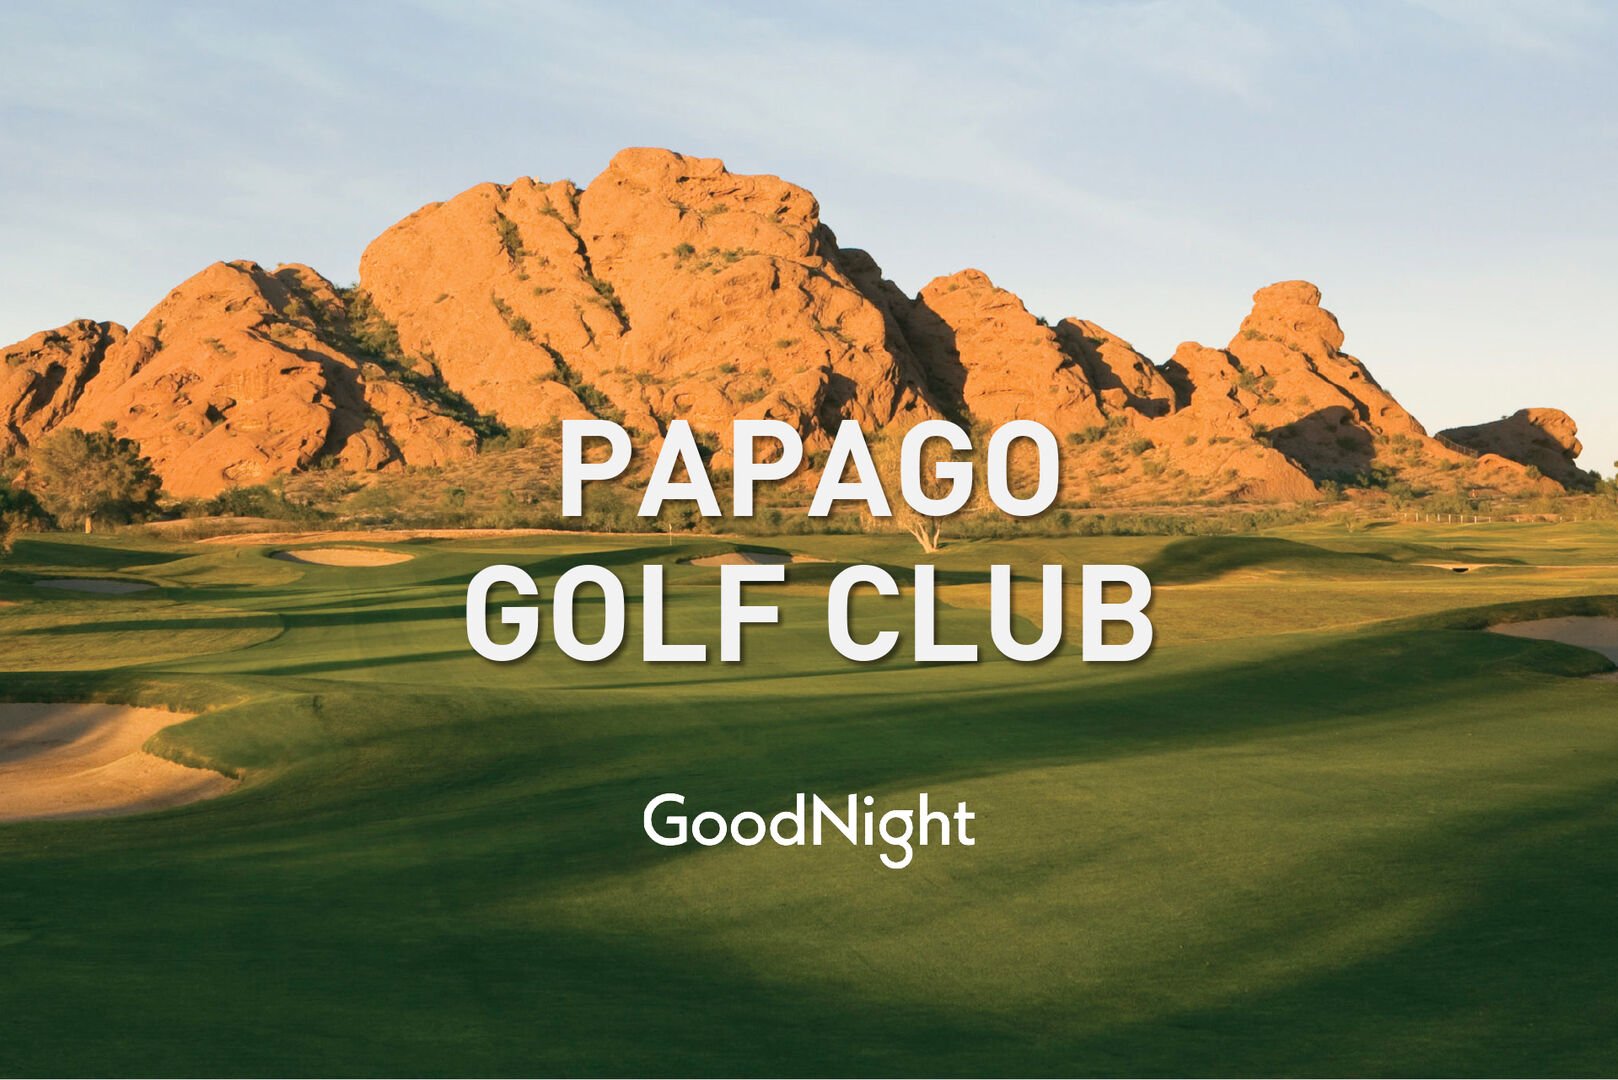 20 mins: Papago Golf Club